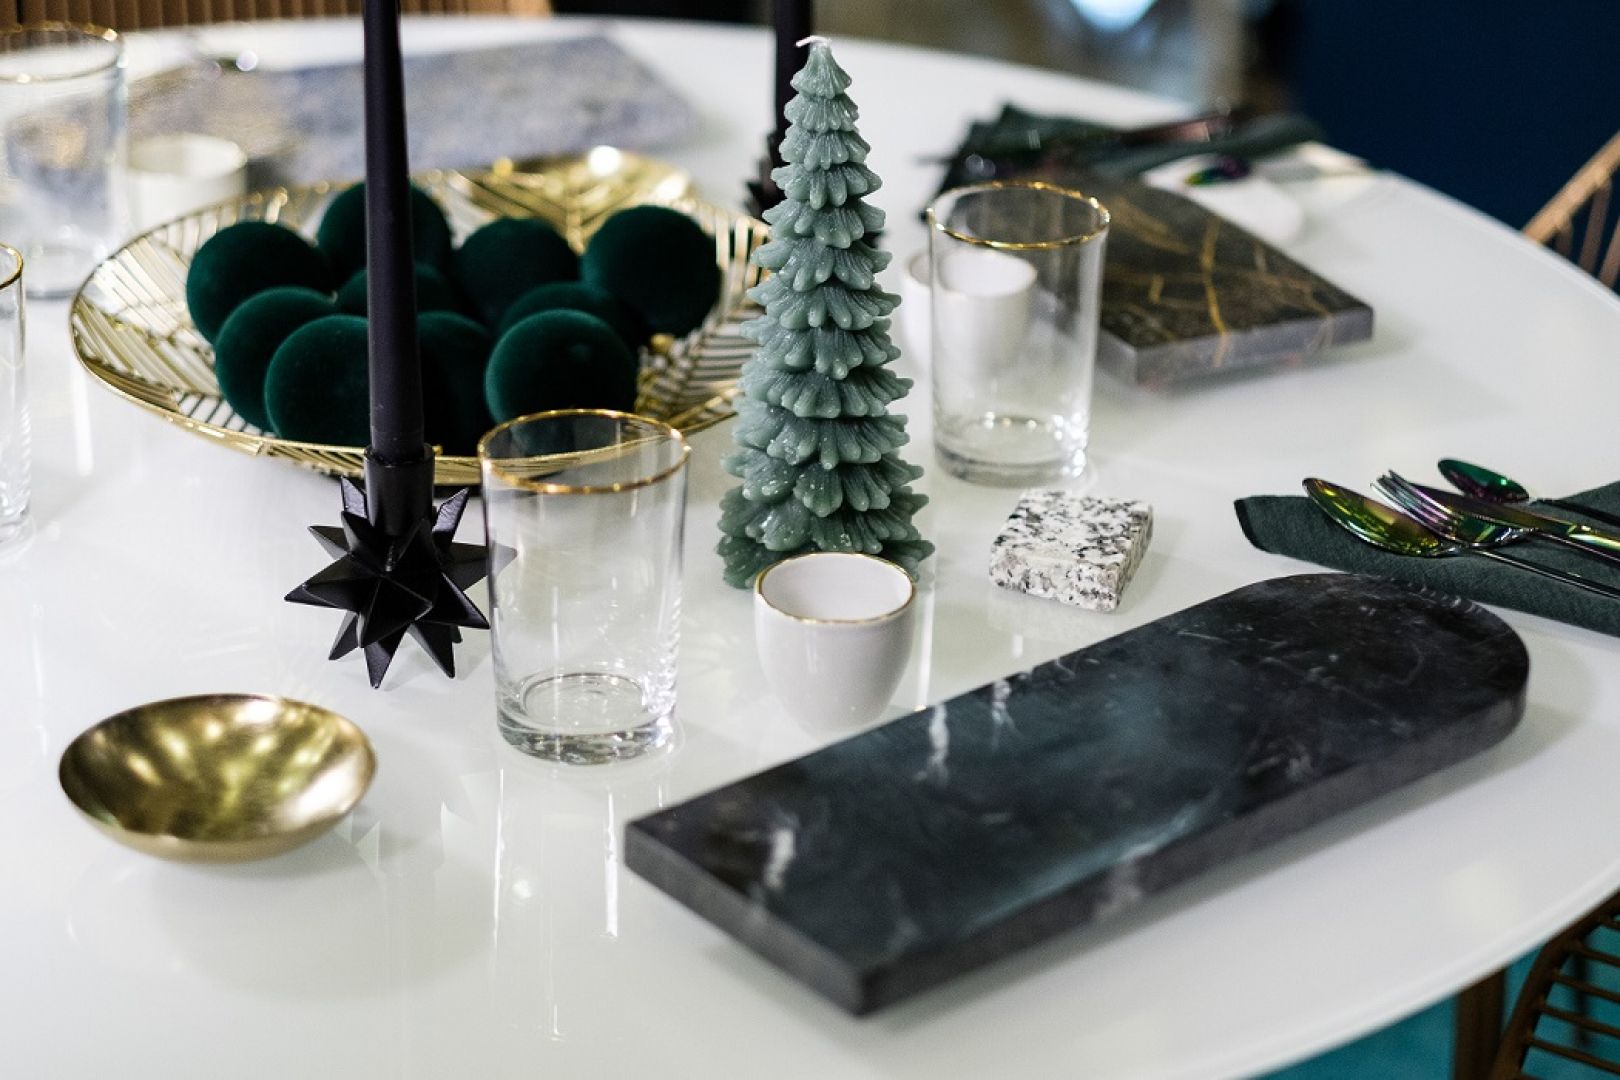 Aranżacja świątecznego stołu przygotowana przez Darię Zawiałow na specjalnej ekspozycji w Domotece. Fot. Domoteka